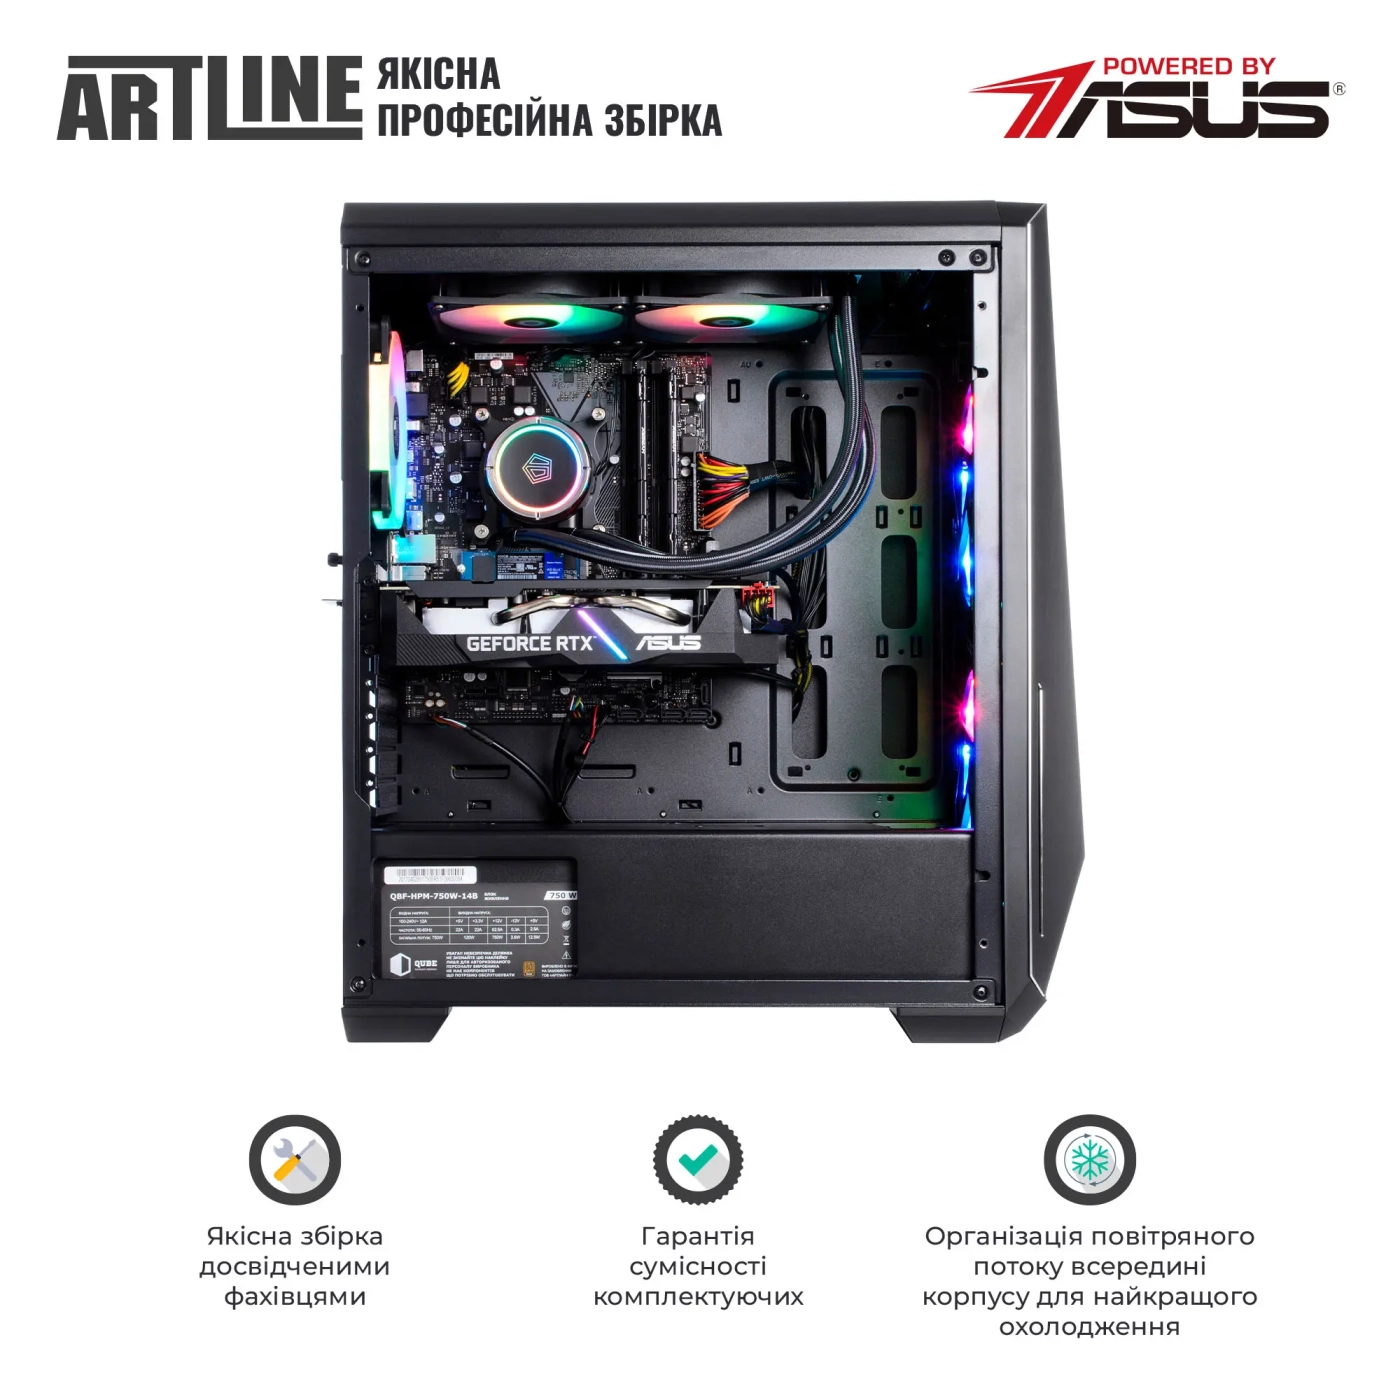 Купить Компьютер ARTLINE Gaming X77v95 - фото 7